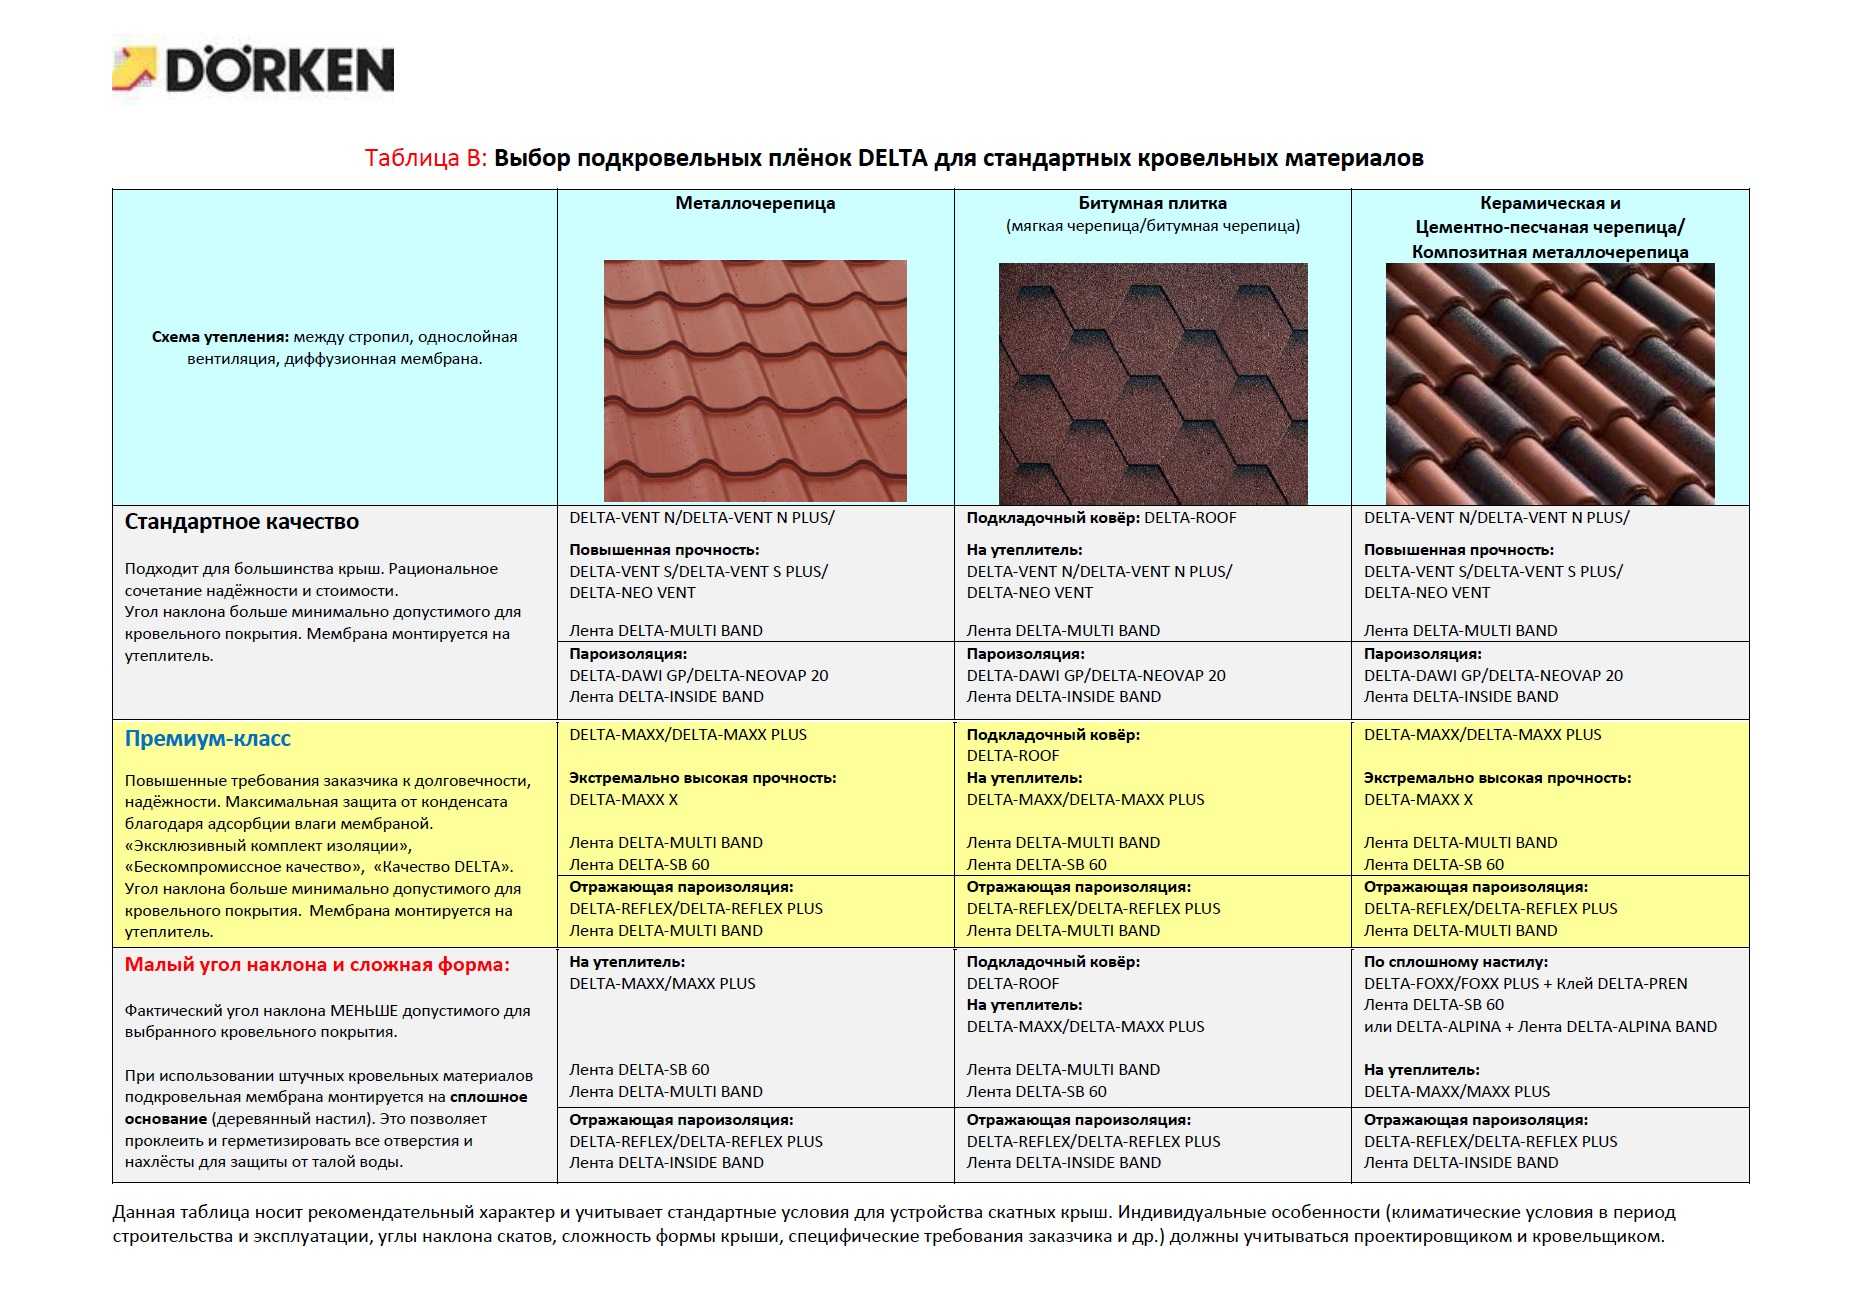 Кровельные материалы для крыши: виды и цены современных покрытий